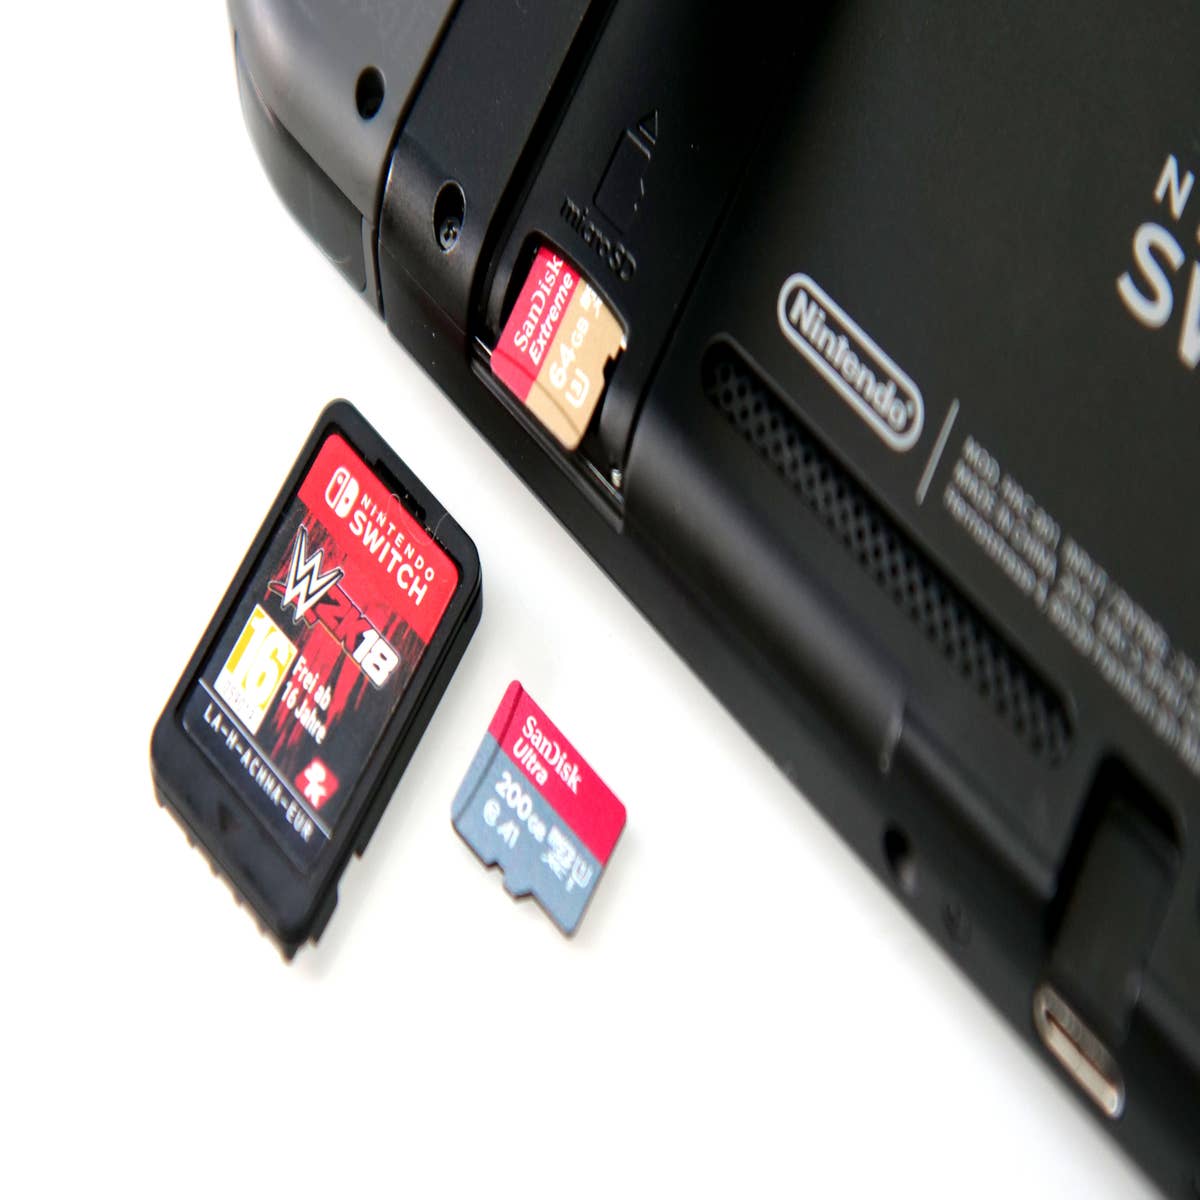 Carte micro SD 32 GB INTENSO